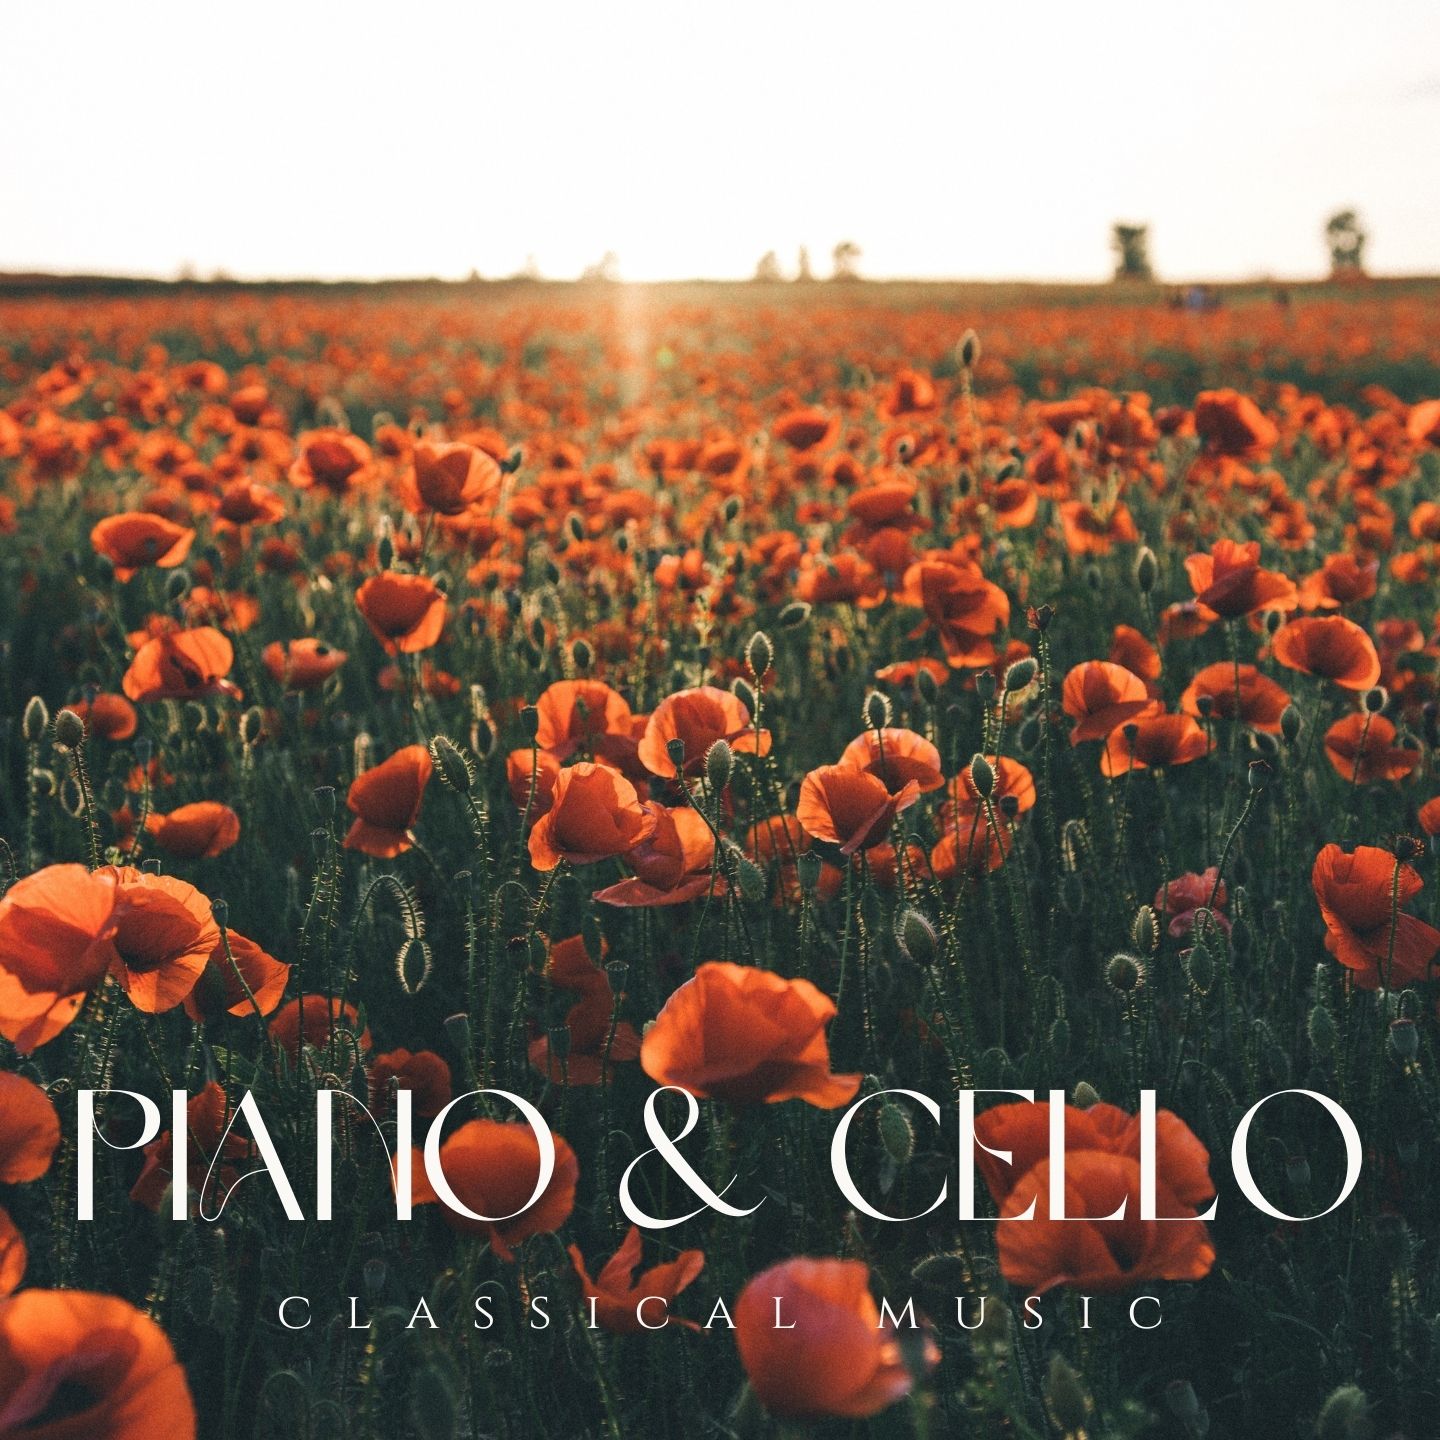 Piano & Cello – Classical Music - Halidon